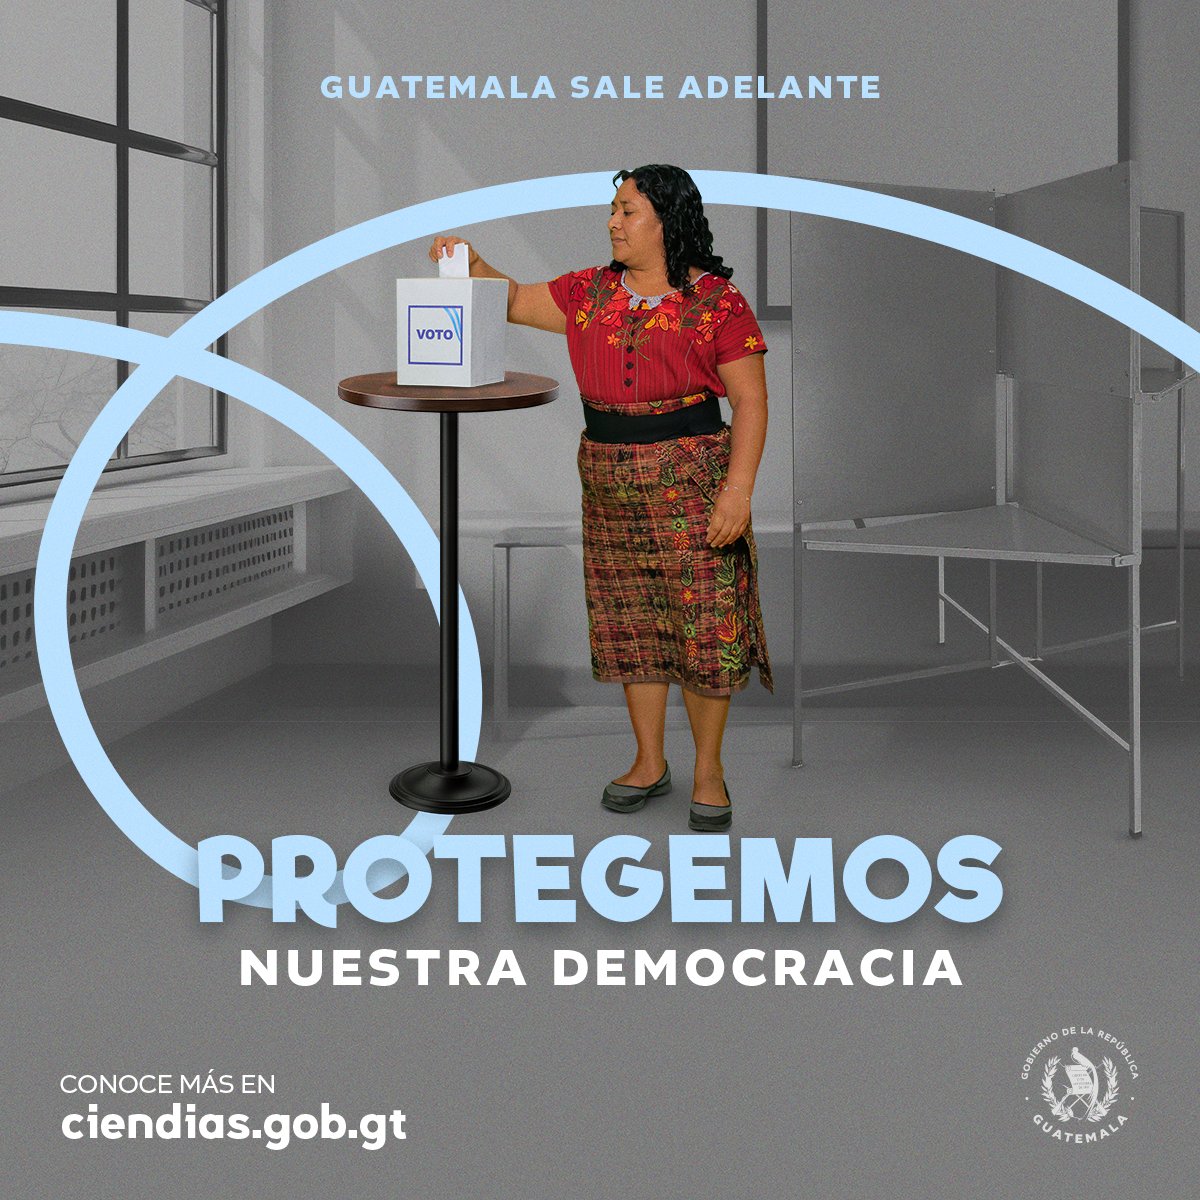 Somos un Gobierno dispuesto a proteger la democracia que tenemos por el pulso del pueblo de Guatemala. #GuatemalaSaleAdelante